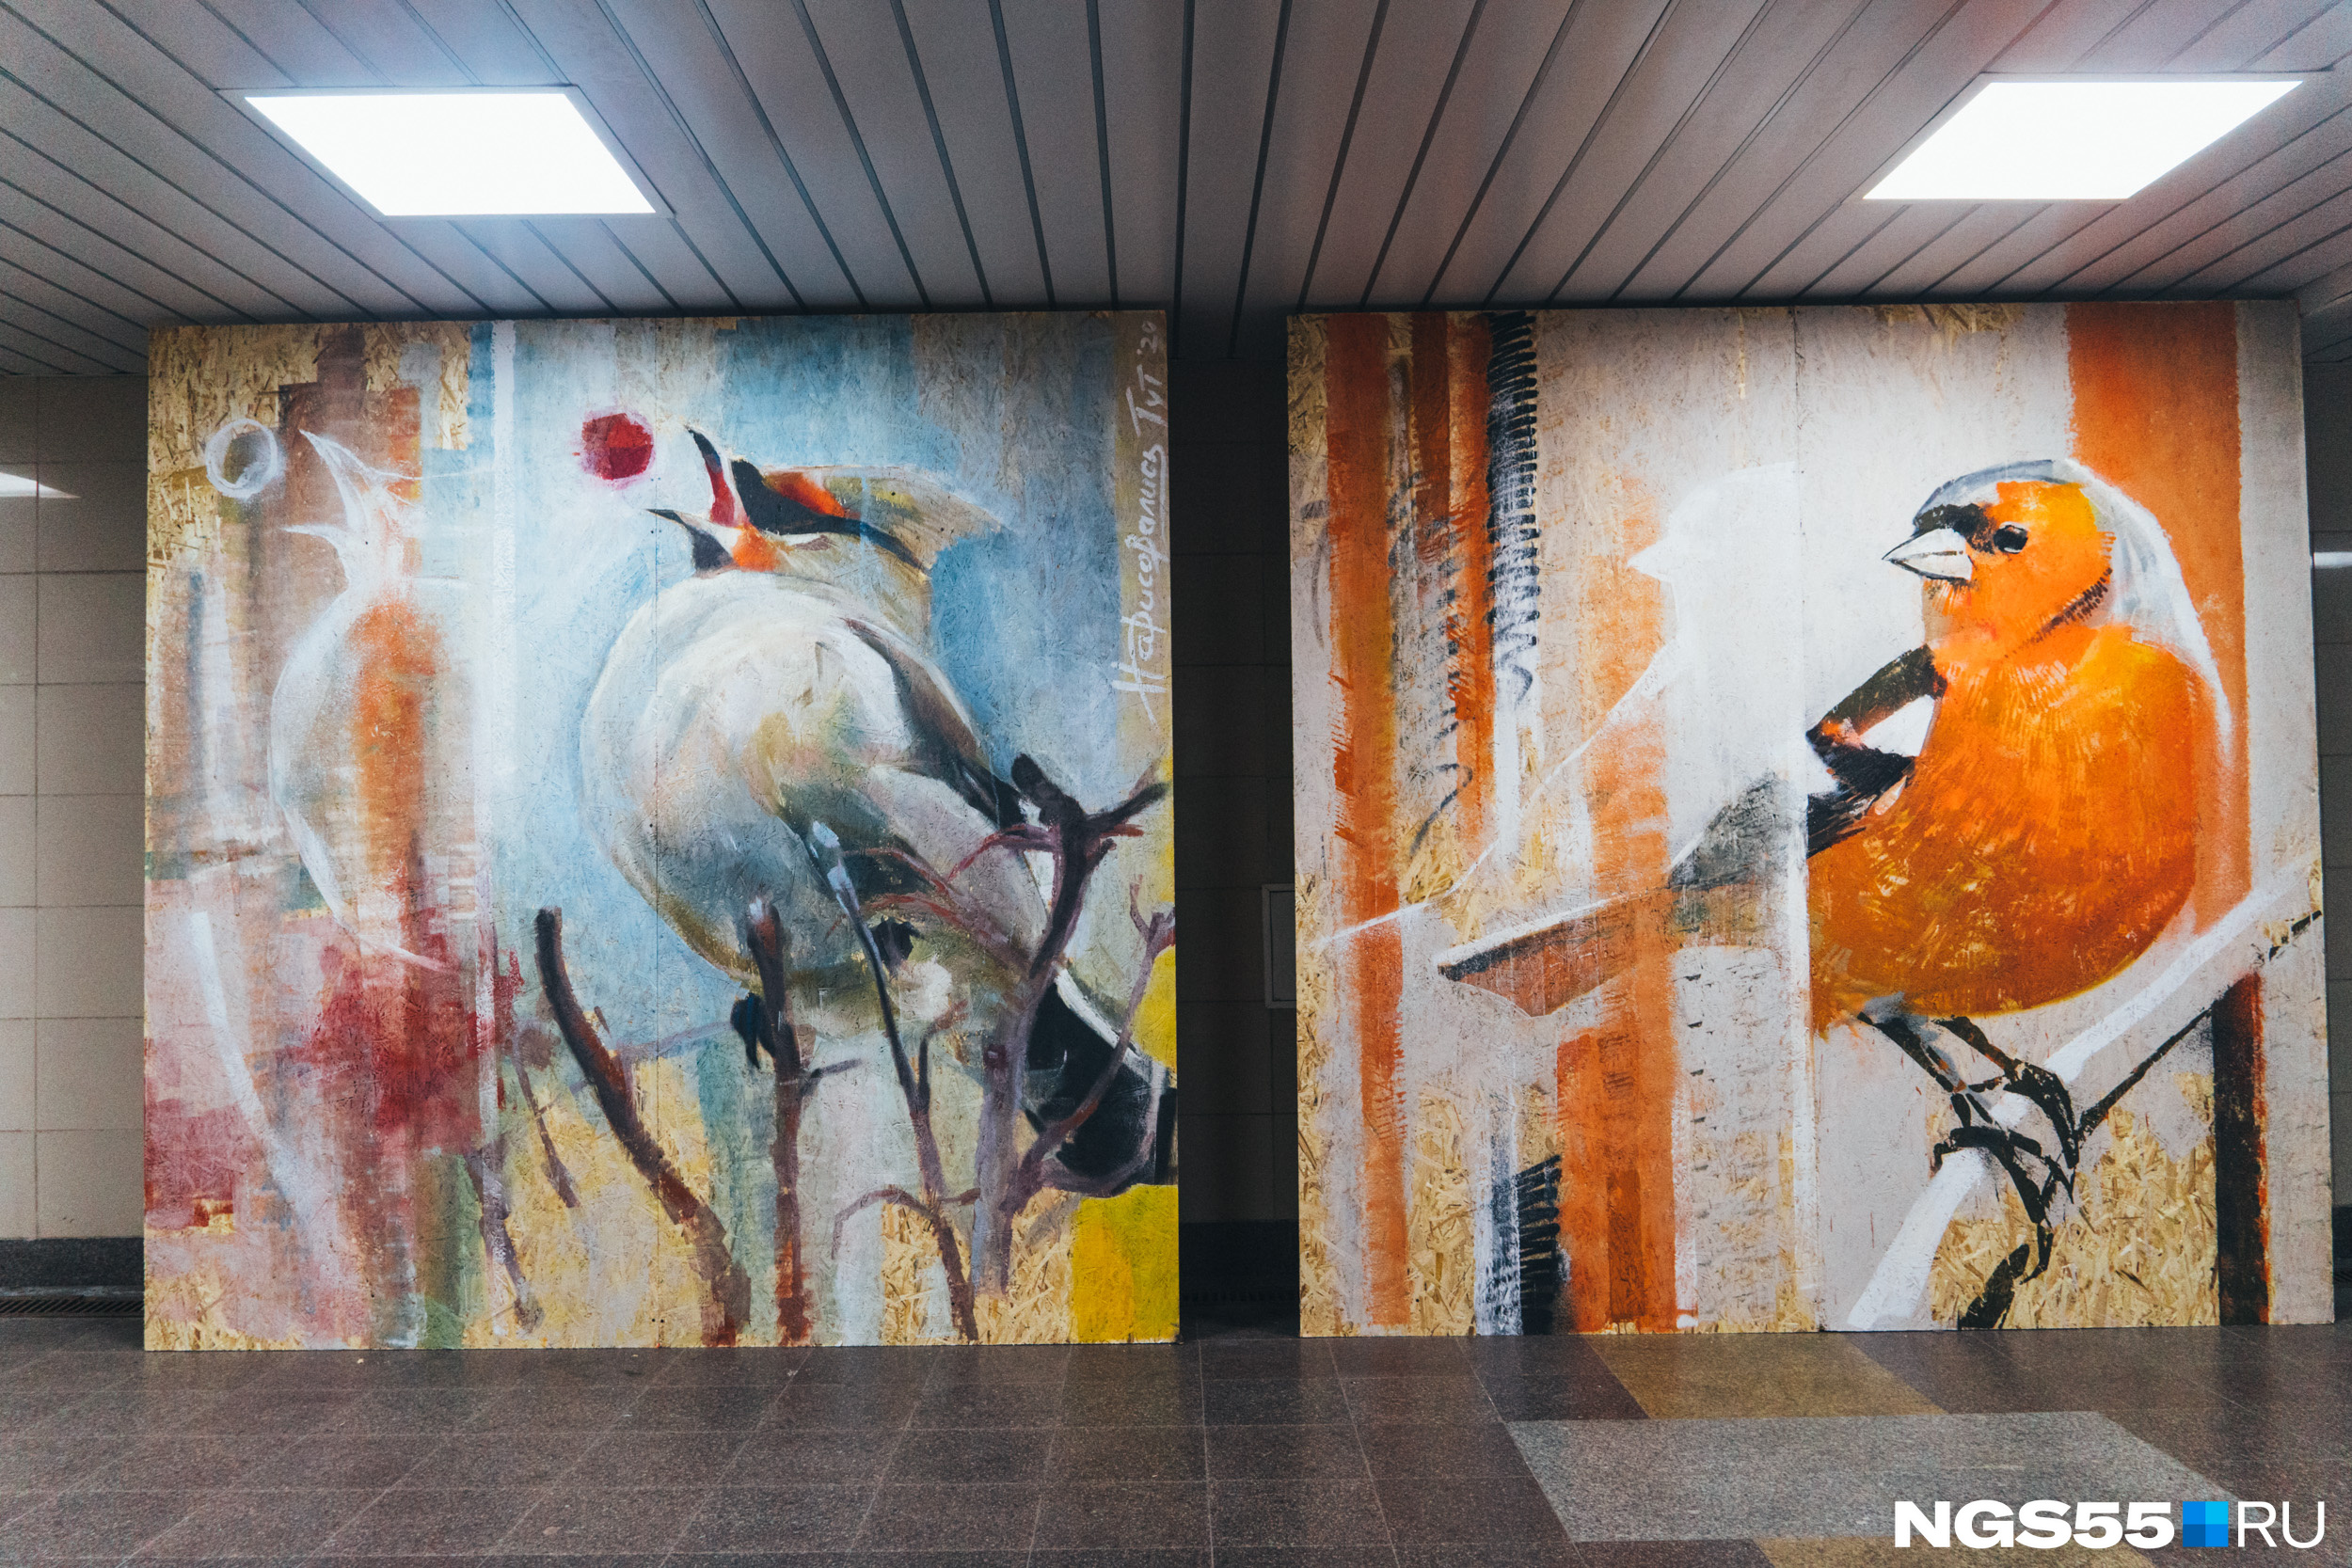 У птиц, нарисованных Маратом Абишевым и Иваном Крячко, свой перелётный маршрут — изначально они находились в другом месте перехода. Так и улететь могут